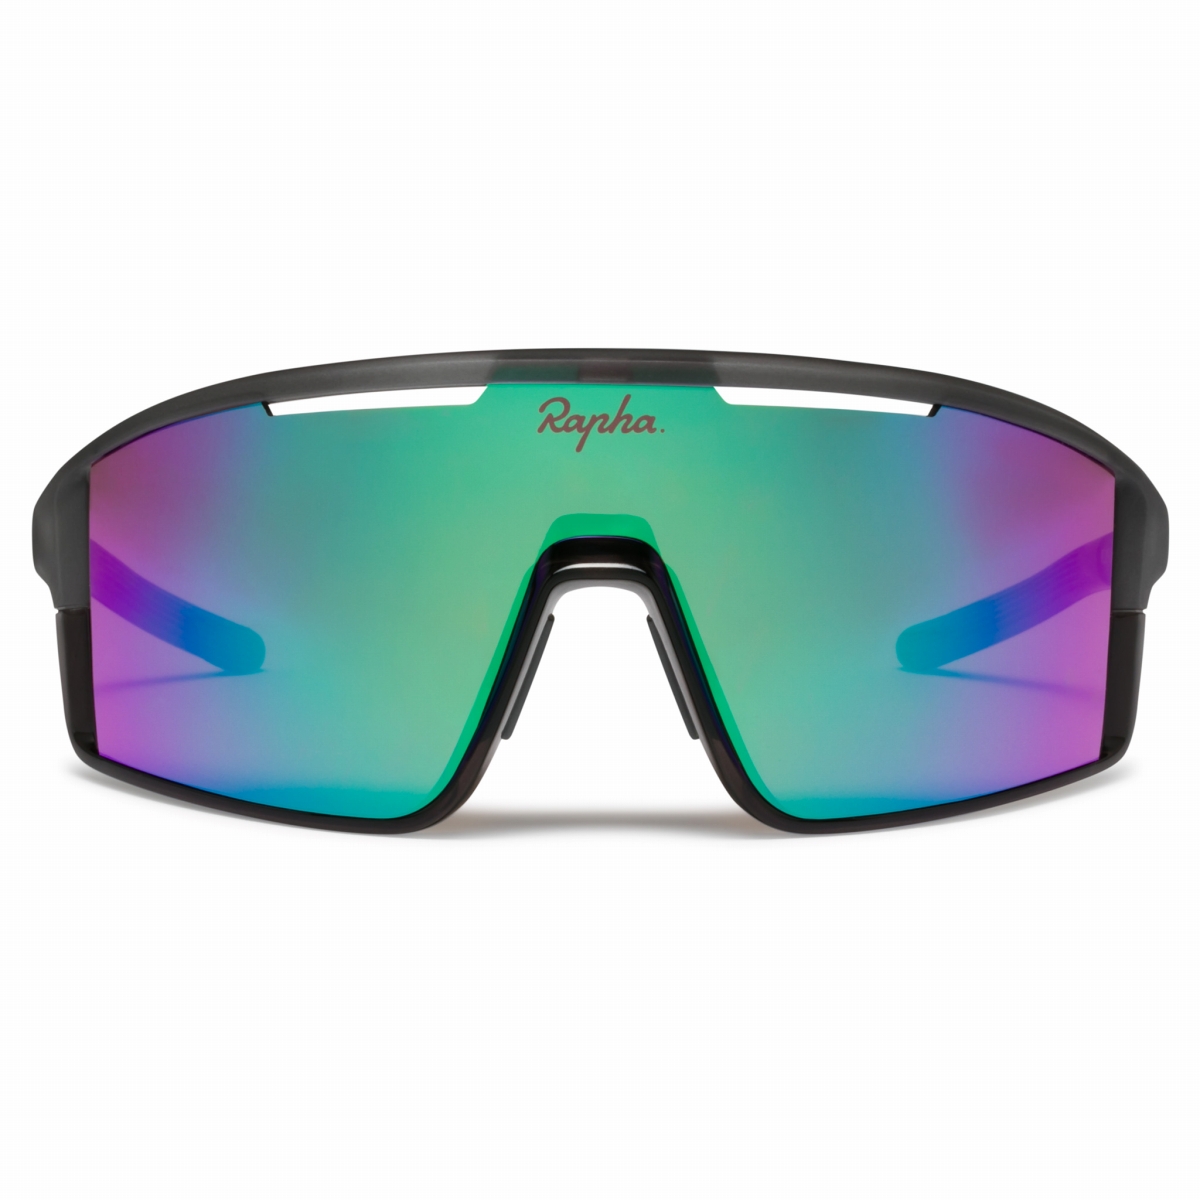 Rapha Pro Team Full Frame Sunglasses